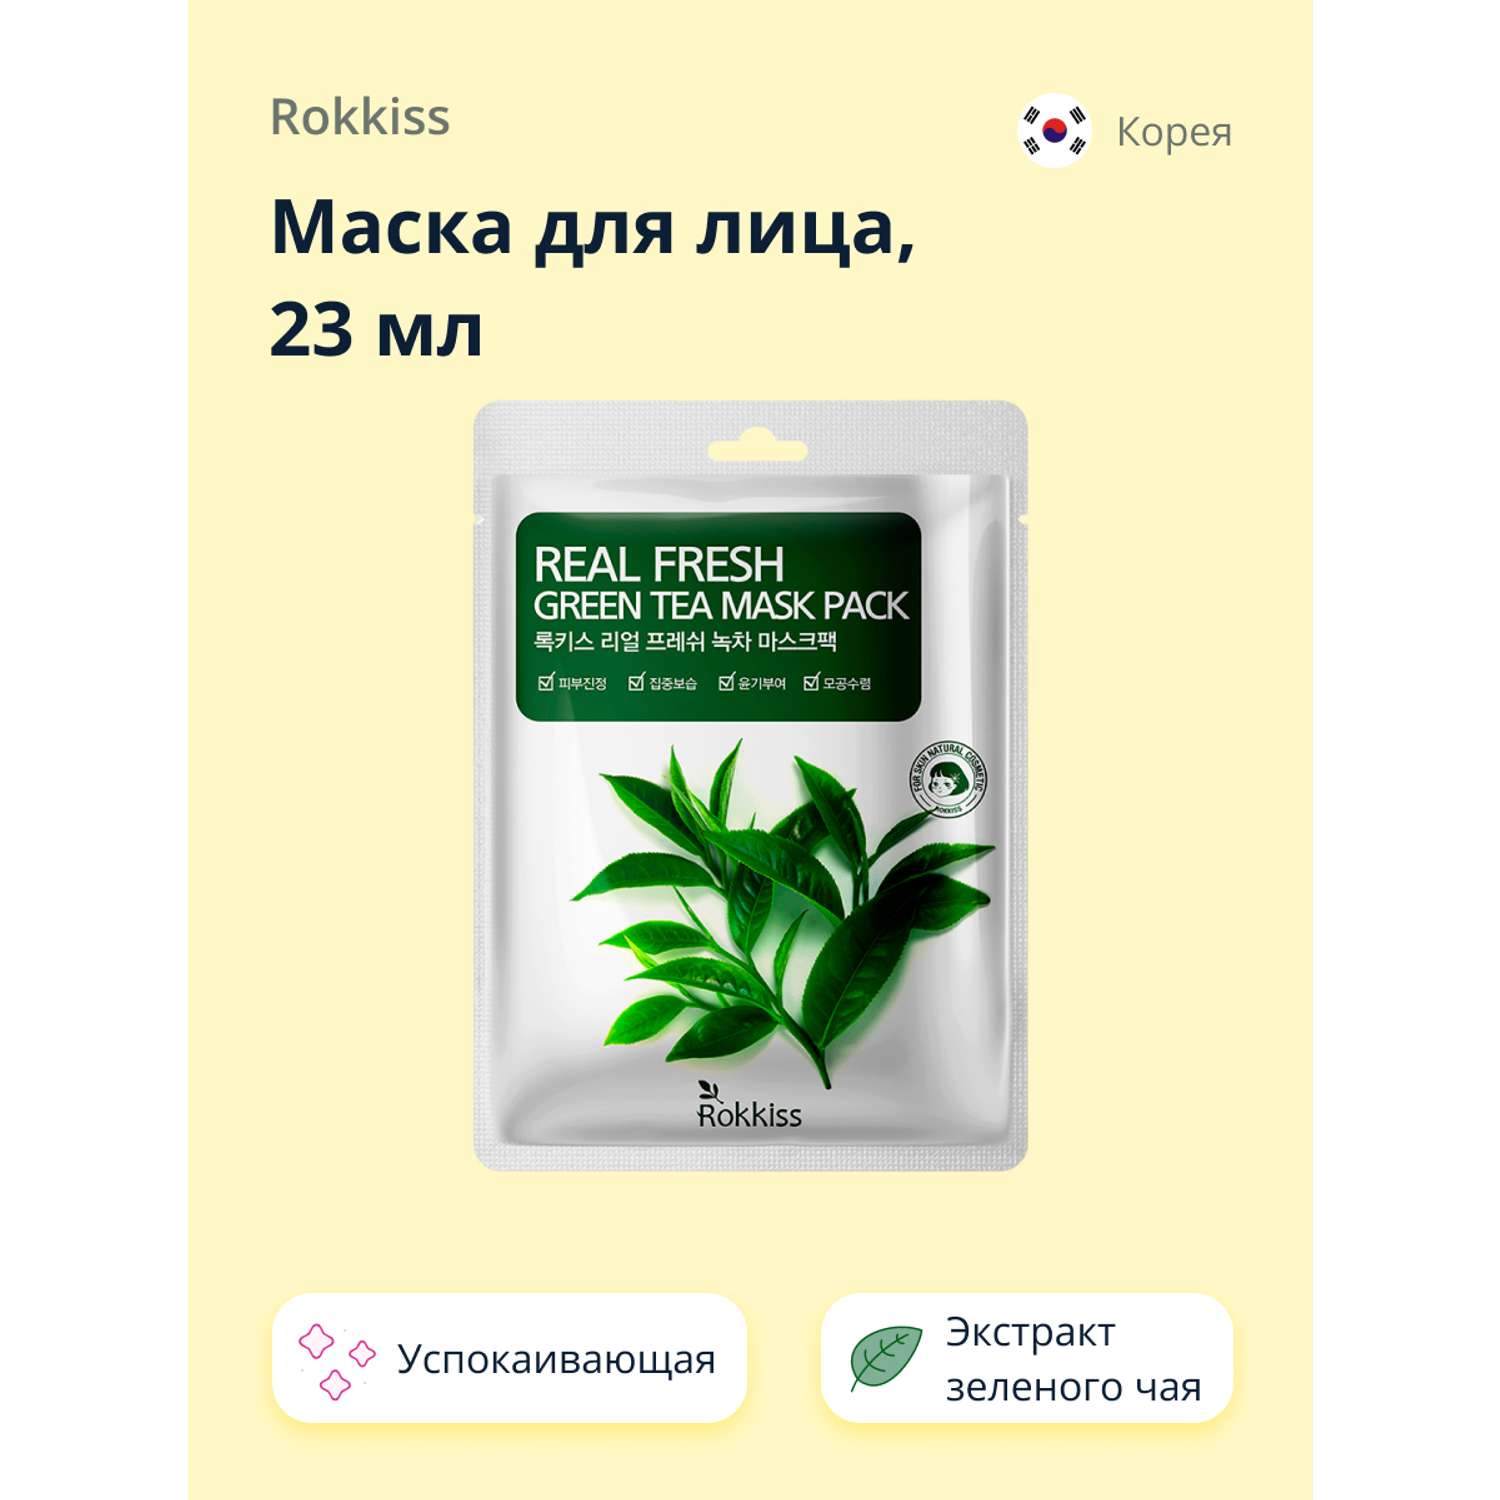 Маска тканевая Rokkiss Real fresh с экстрактом зеленого чая успокаивающая 23 мл - фото 1